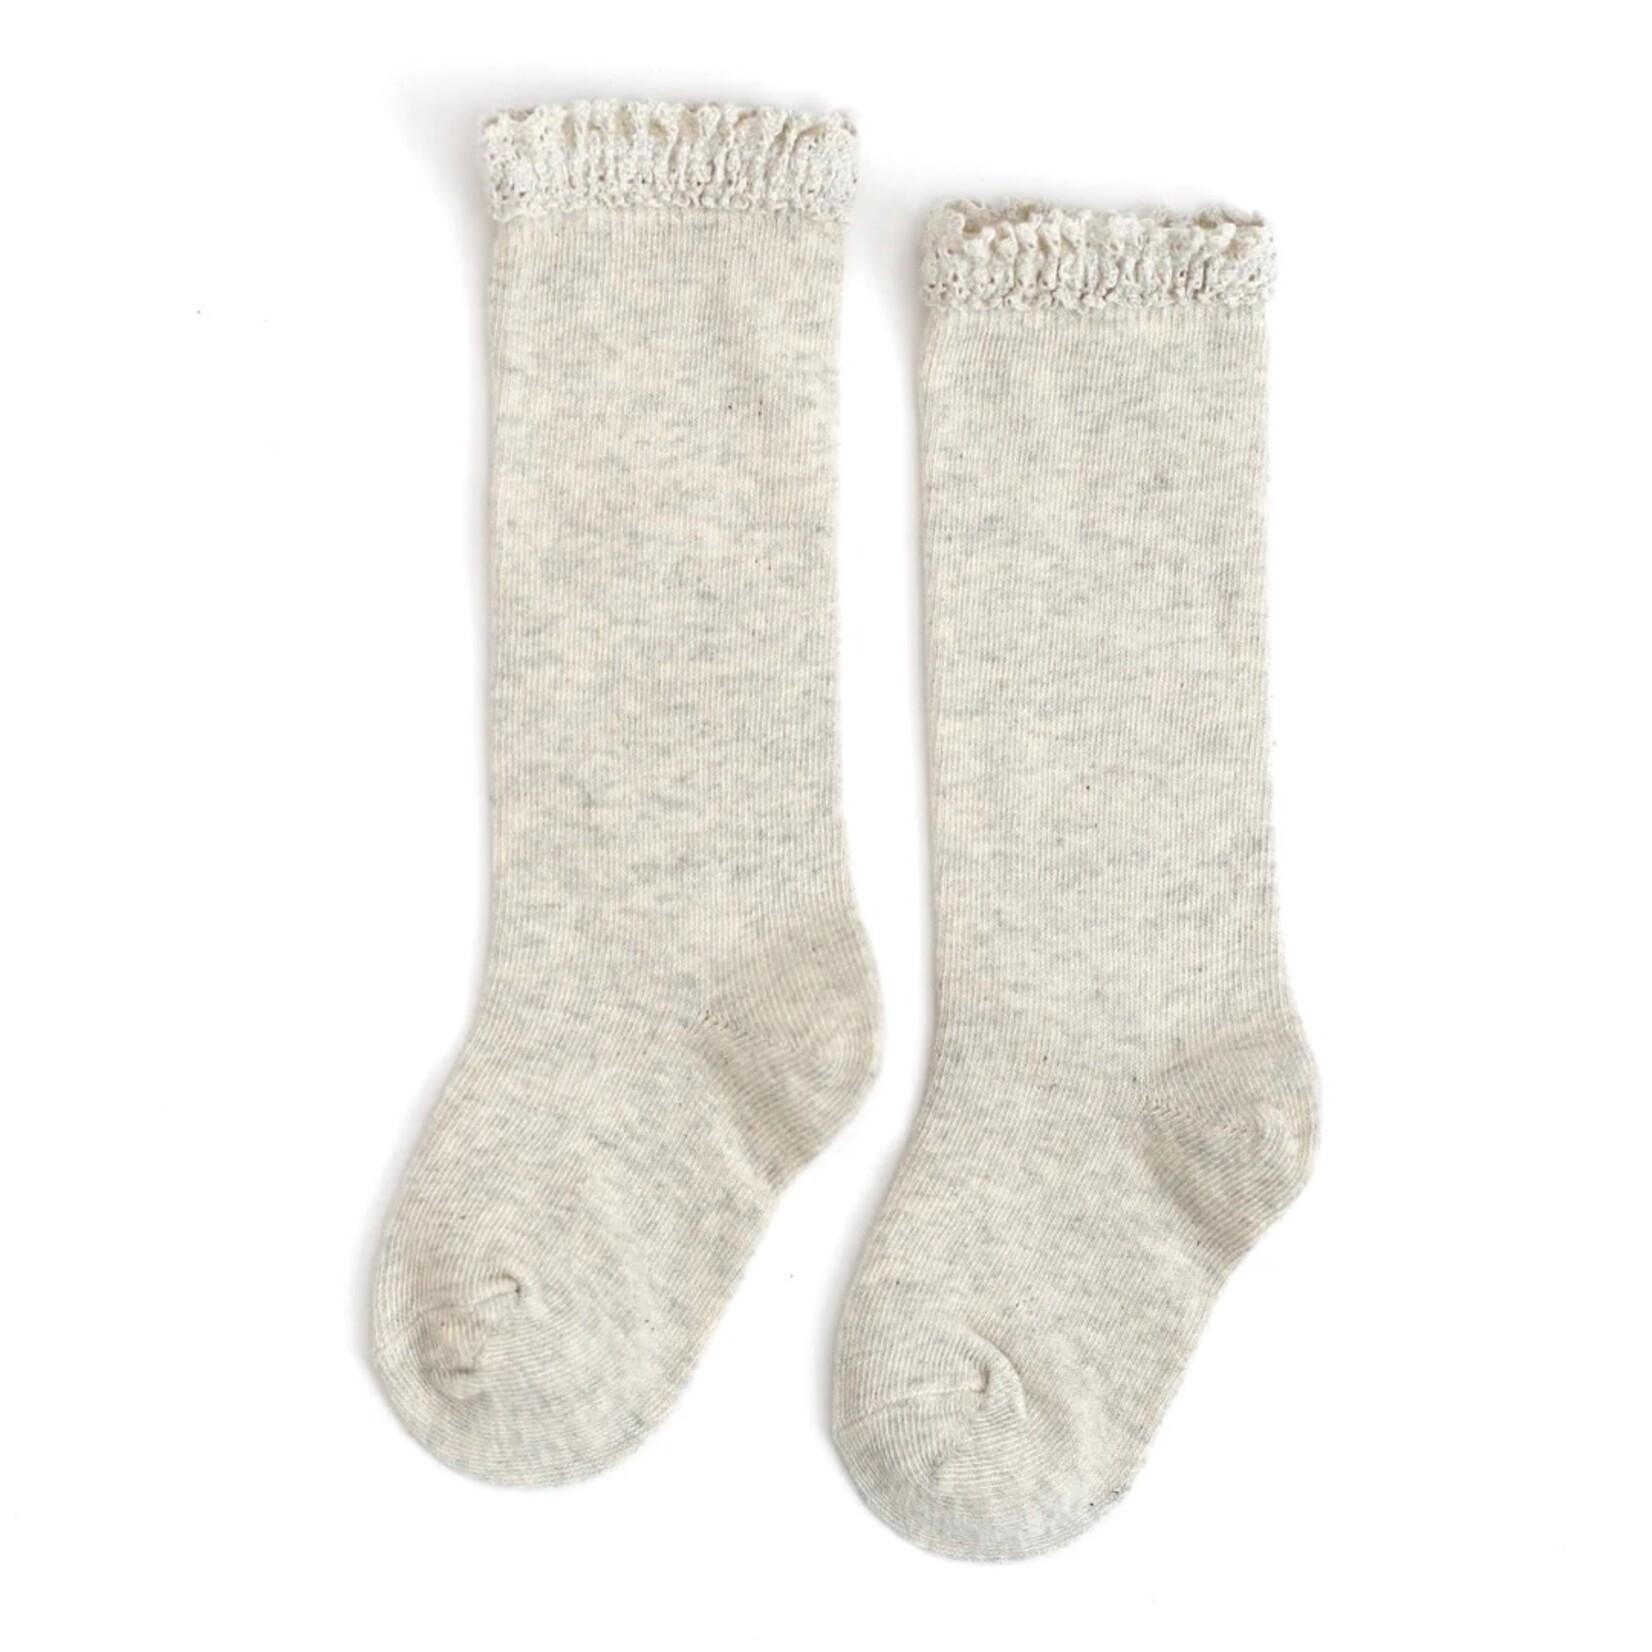 Little Stocking Co. Heathered Ivory Lace Socks